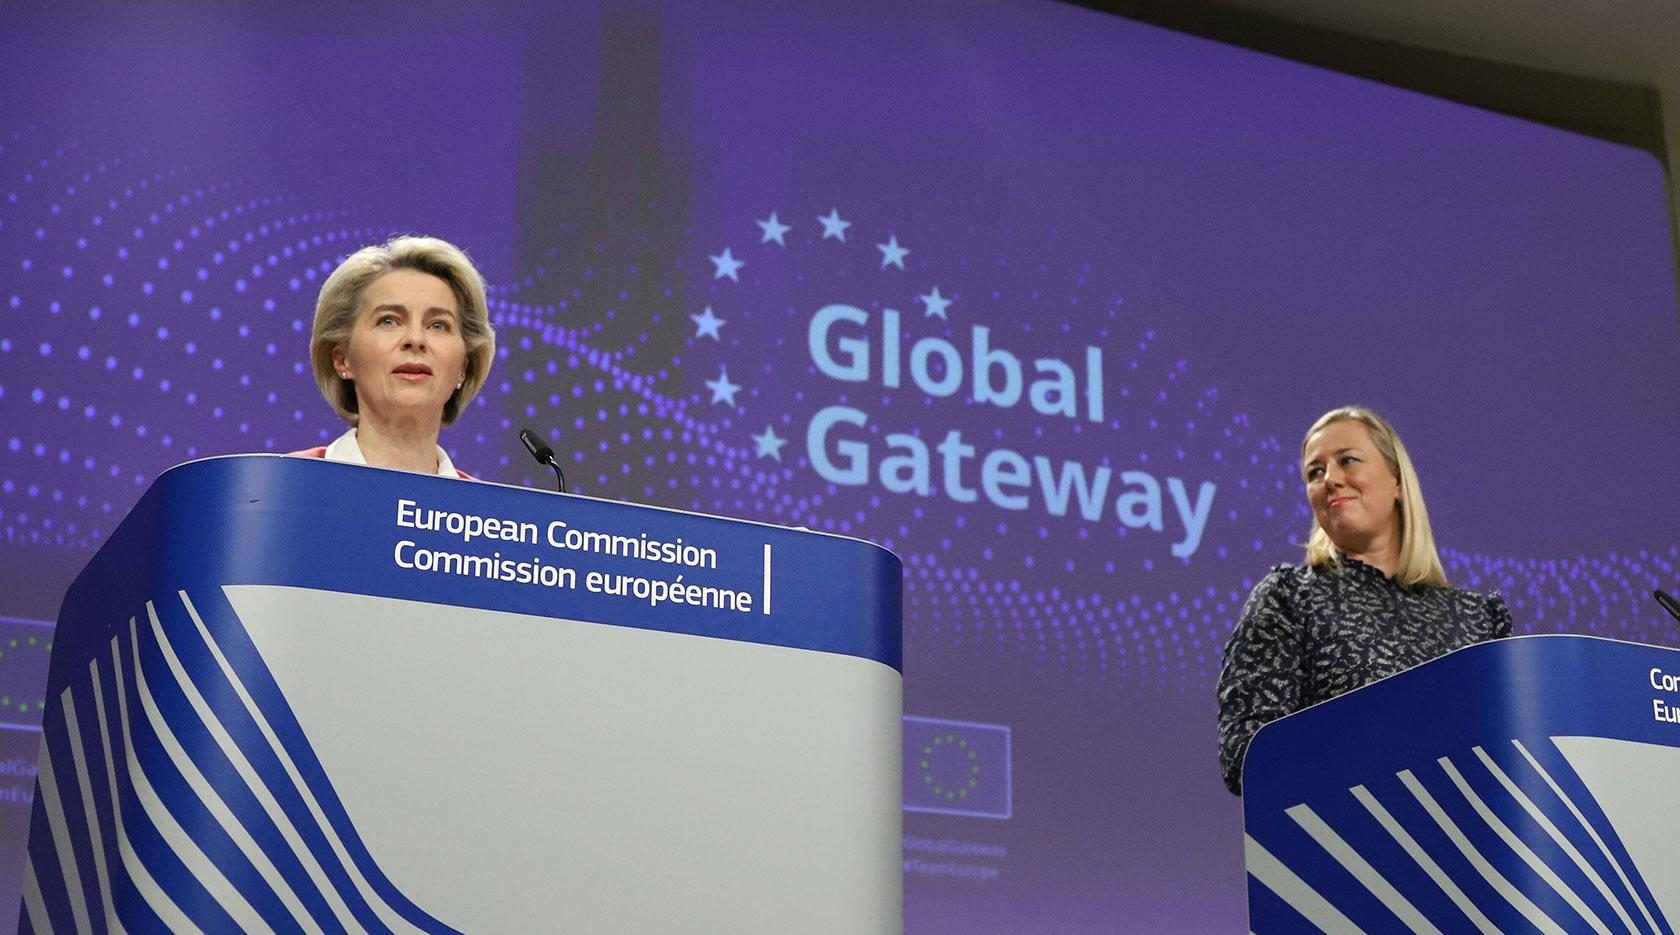 ЕС Противостоит Инициативе «Один пояс — один путь» с Помощью «Глобальных ворот»